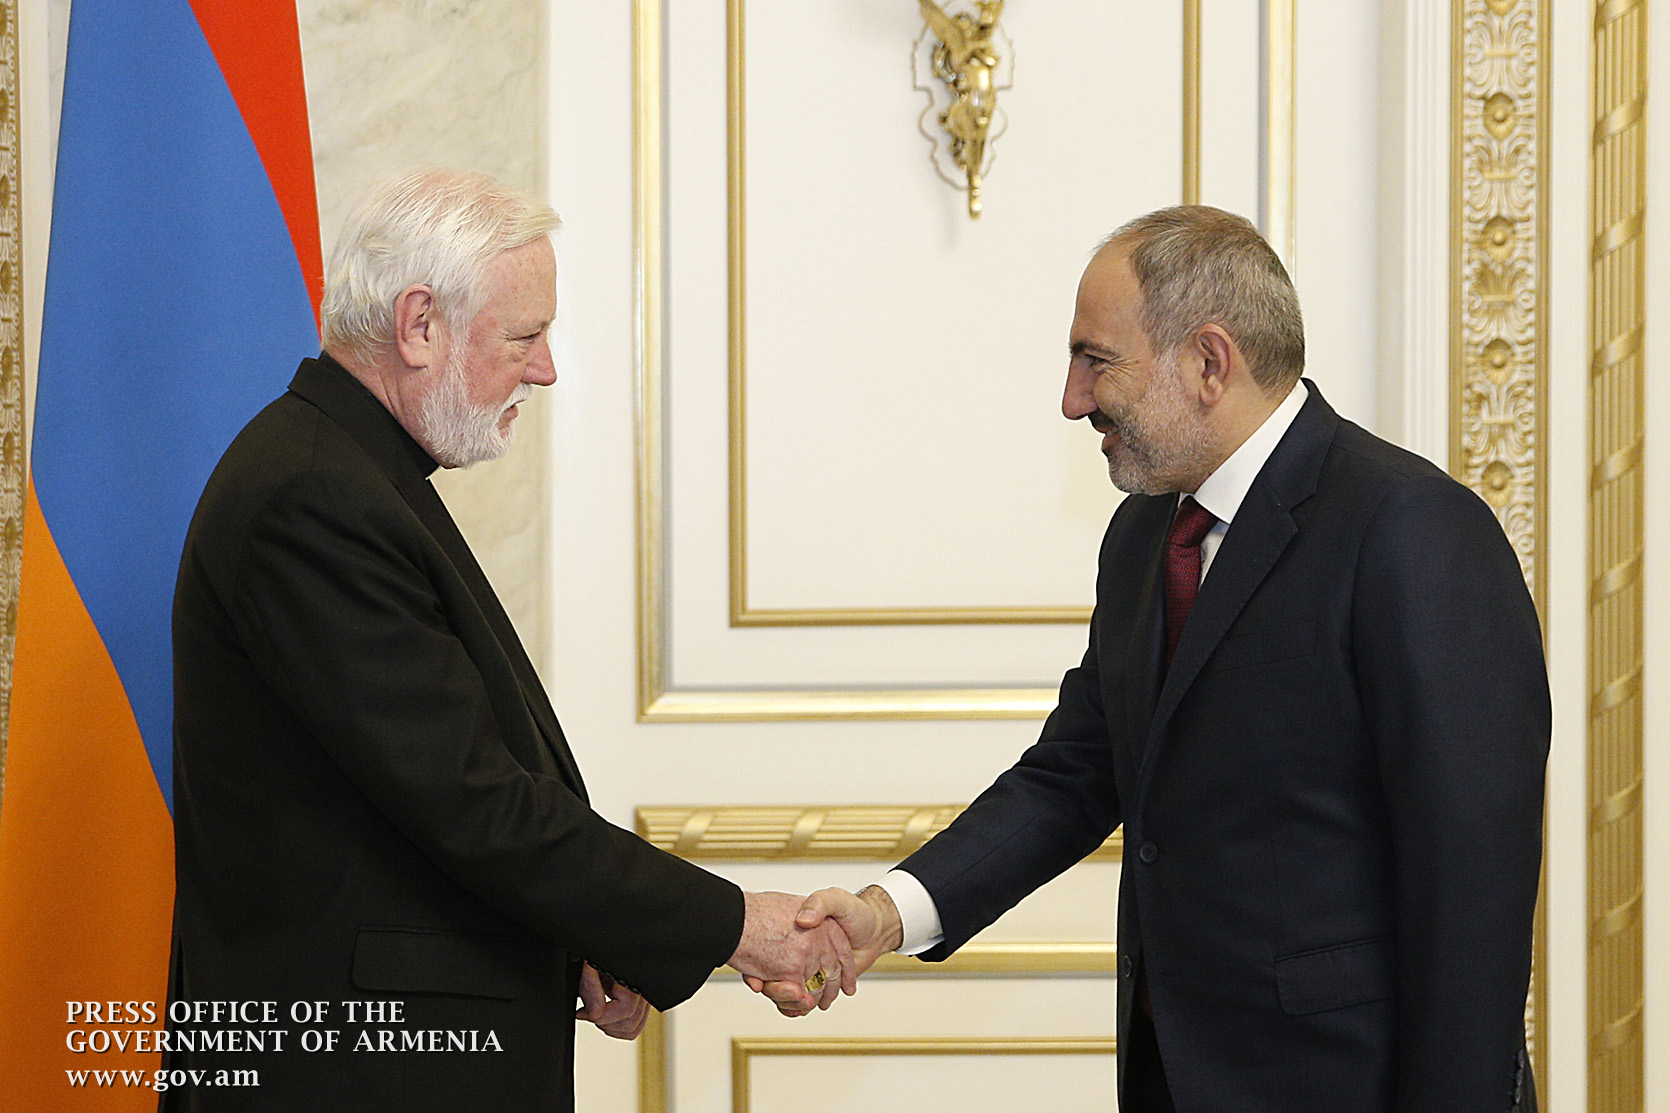 Святой Престол высоко ценит исторические связи с Арменией